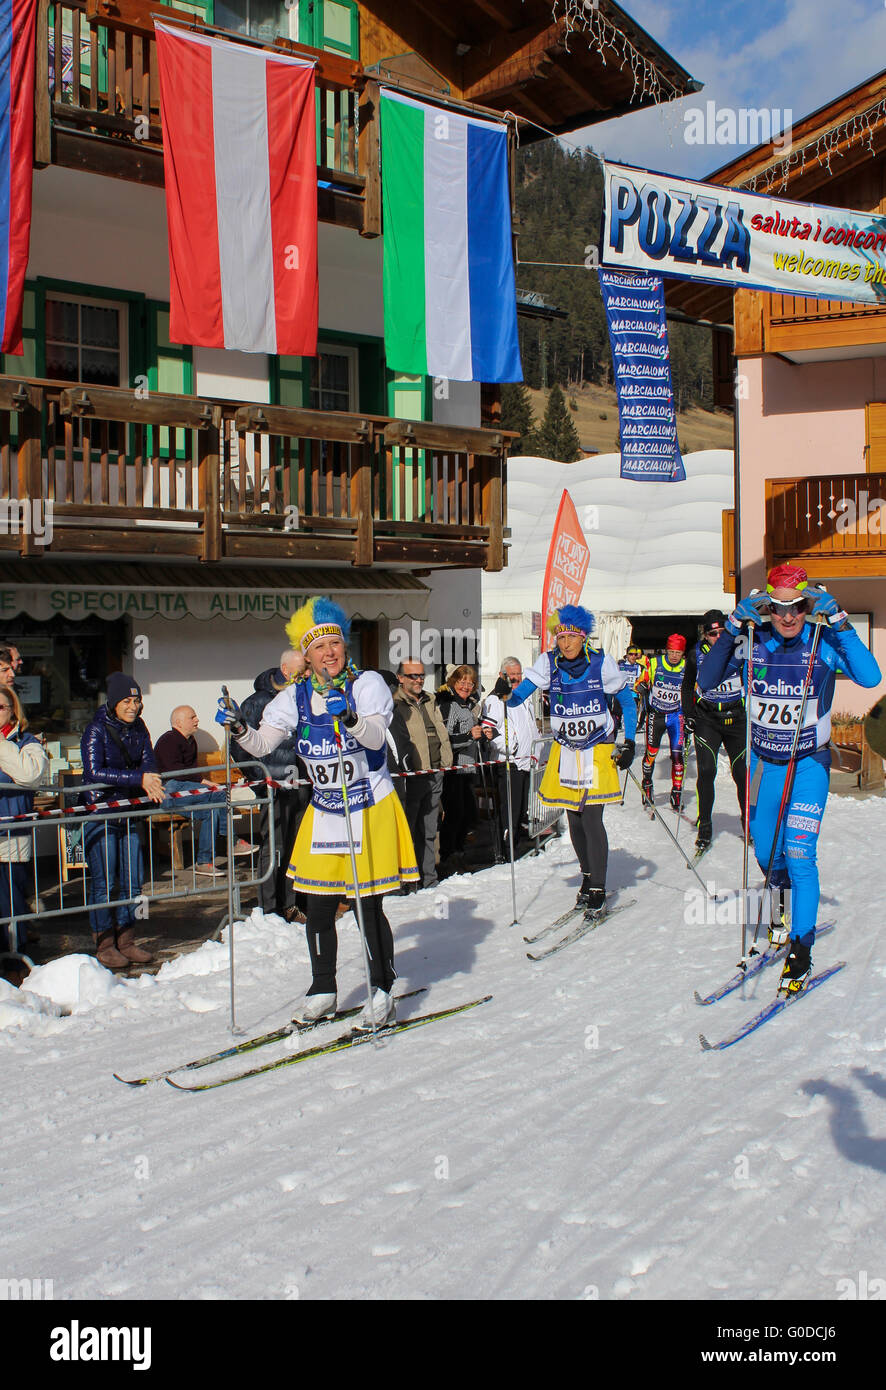 Skieurs de fond, certains déguisés, prendre part à la Marcialonga 2016, une longue distance, course de ski de fond Banque D'Images